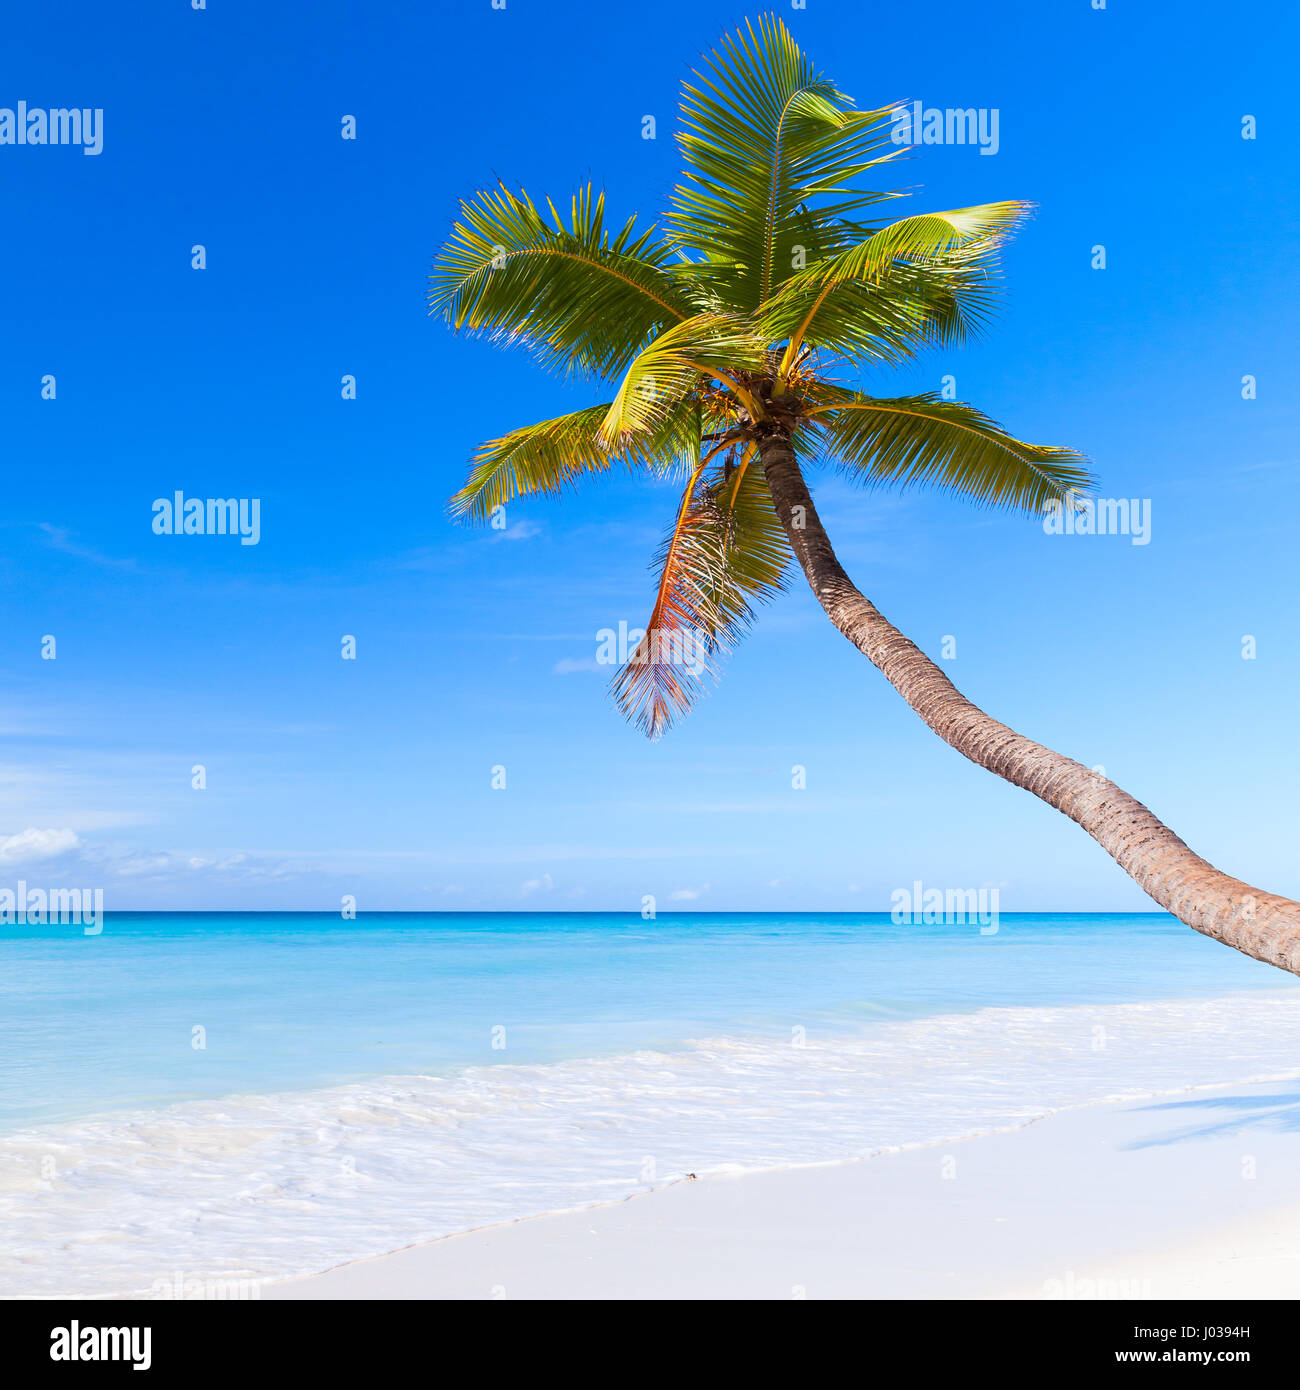 Mar Caribe, República Dominicana, isla Saona. Palmera crece sobre arena blanca de la playa Foto de stock